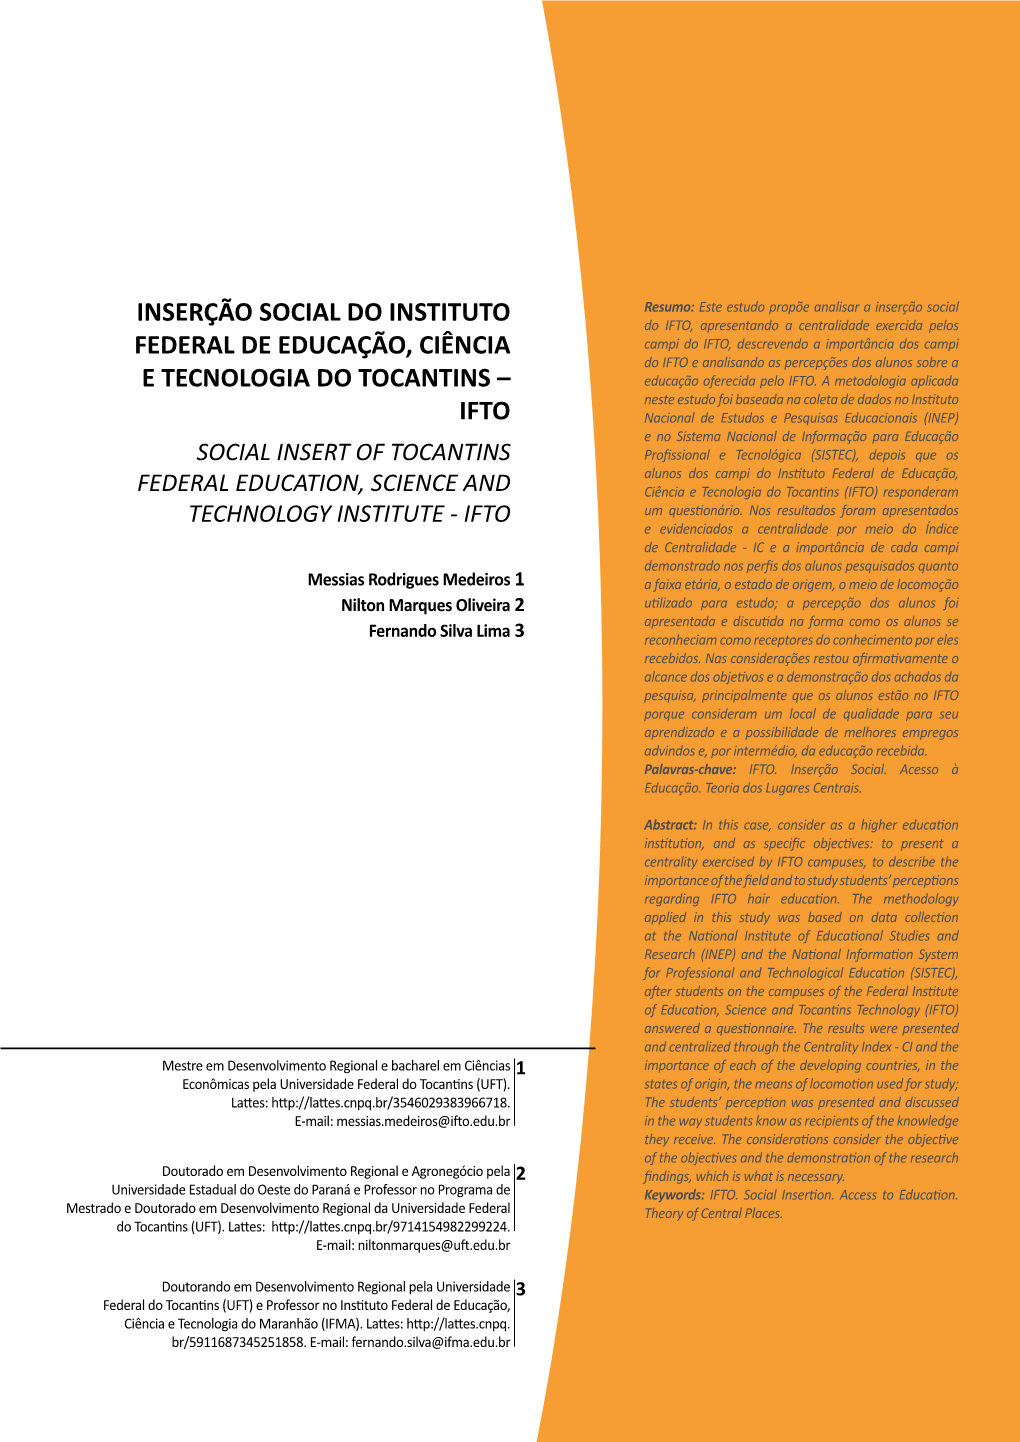 Inserção Social Do Instituto Federal De Educação, Ciência E Tecnologia Do Tocantins